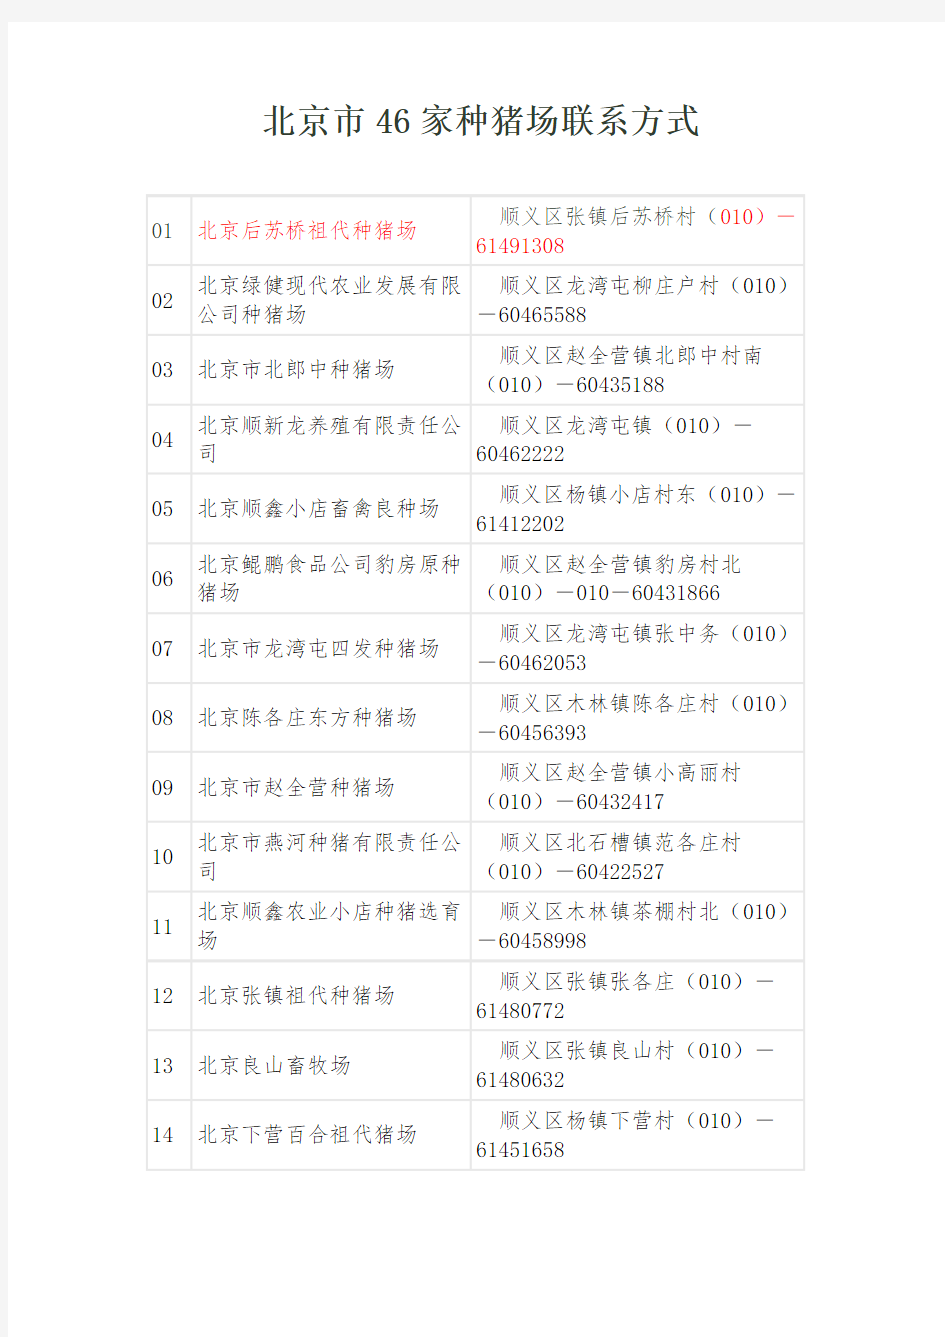 北京市46家种猪场地址及联系方式